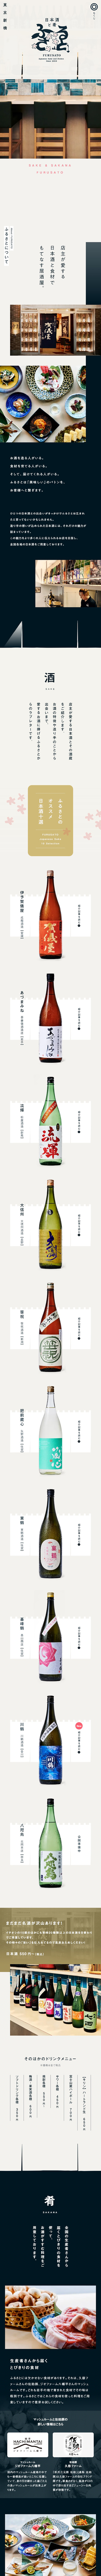 日本酒と肴 ふるさと_sp_1